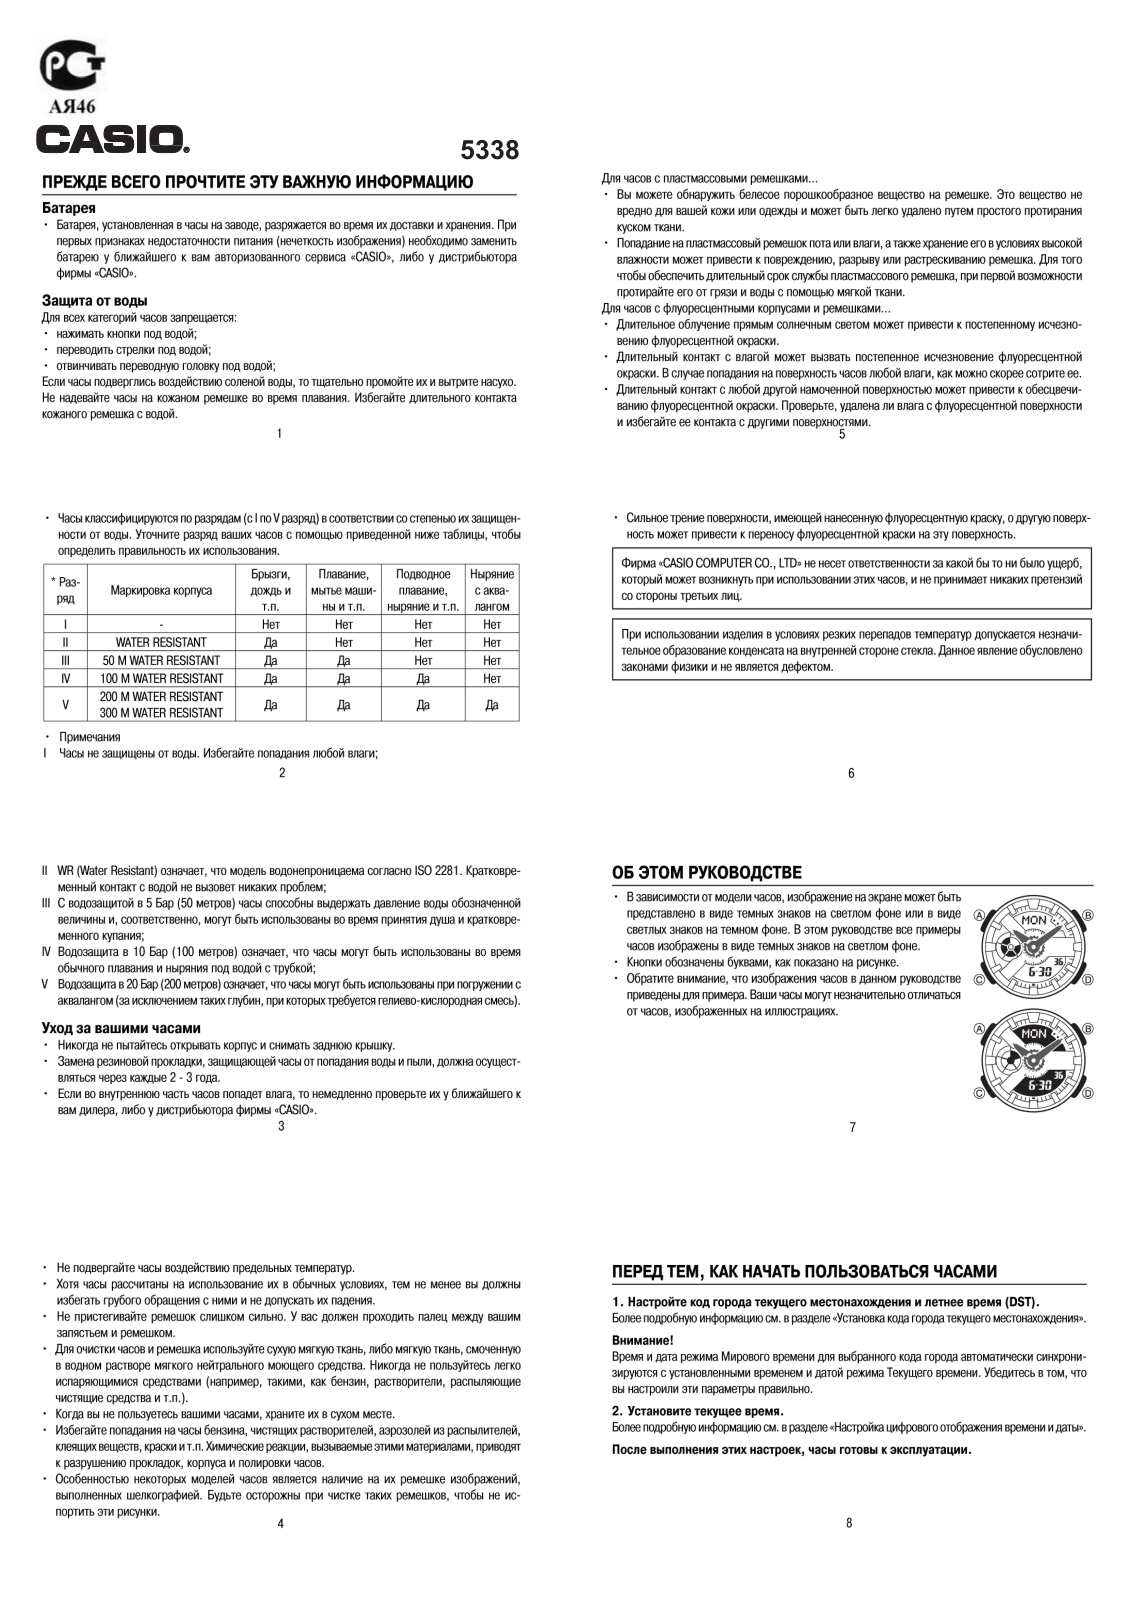 Casio BA-110DC-2A1 User Manual